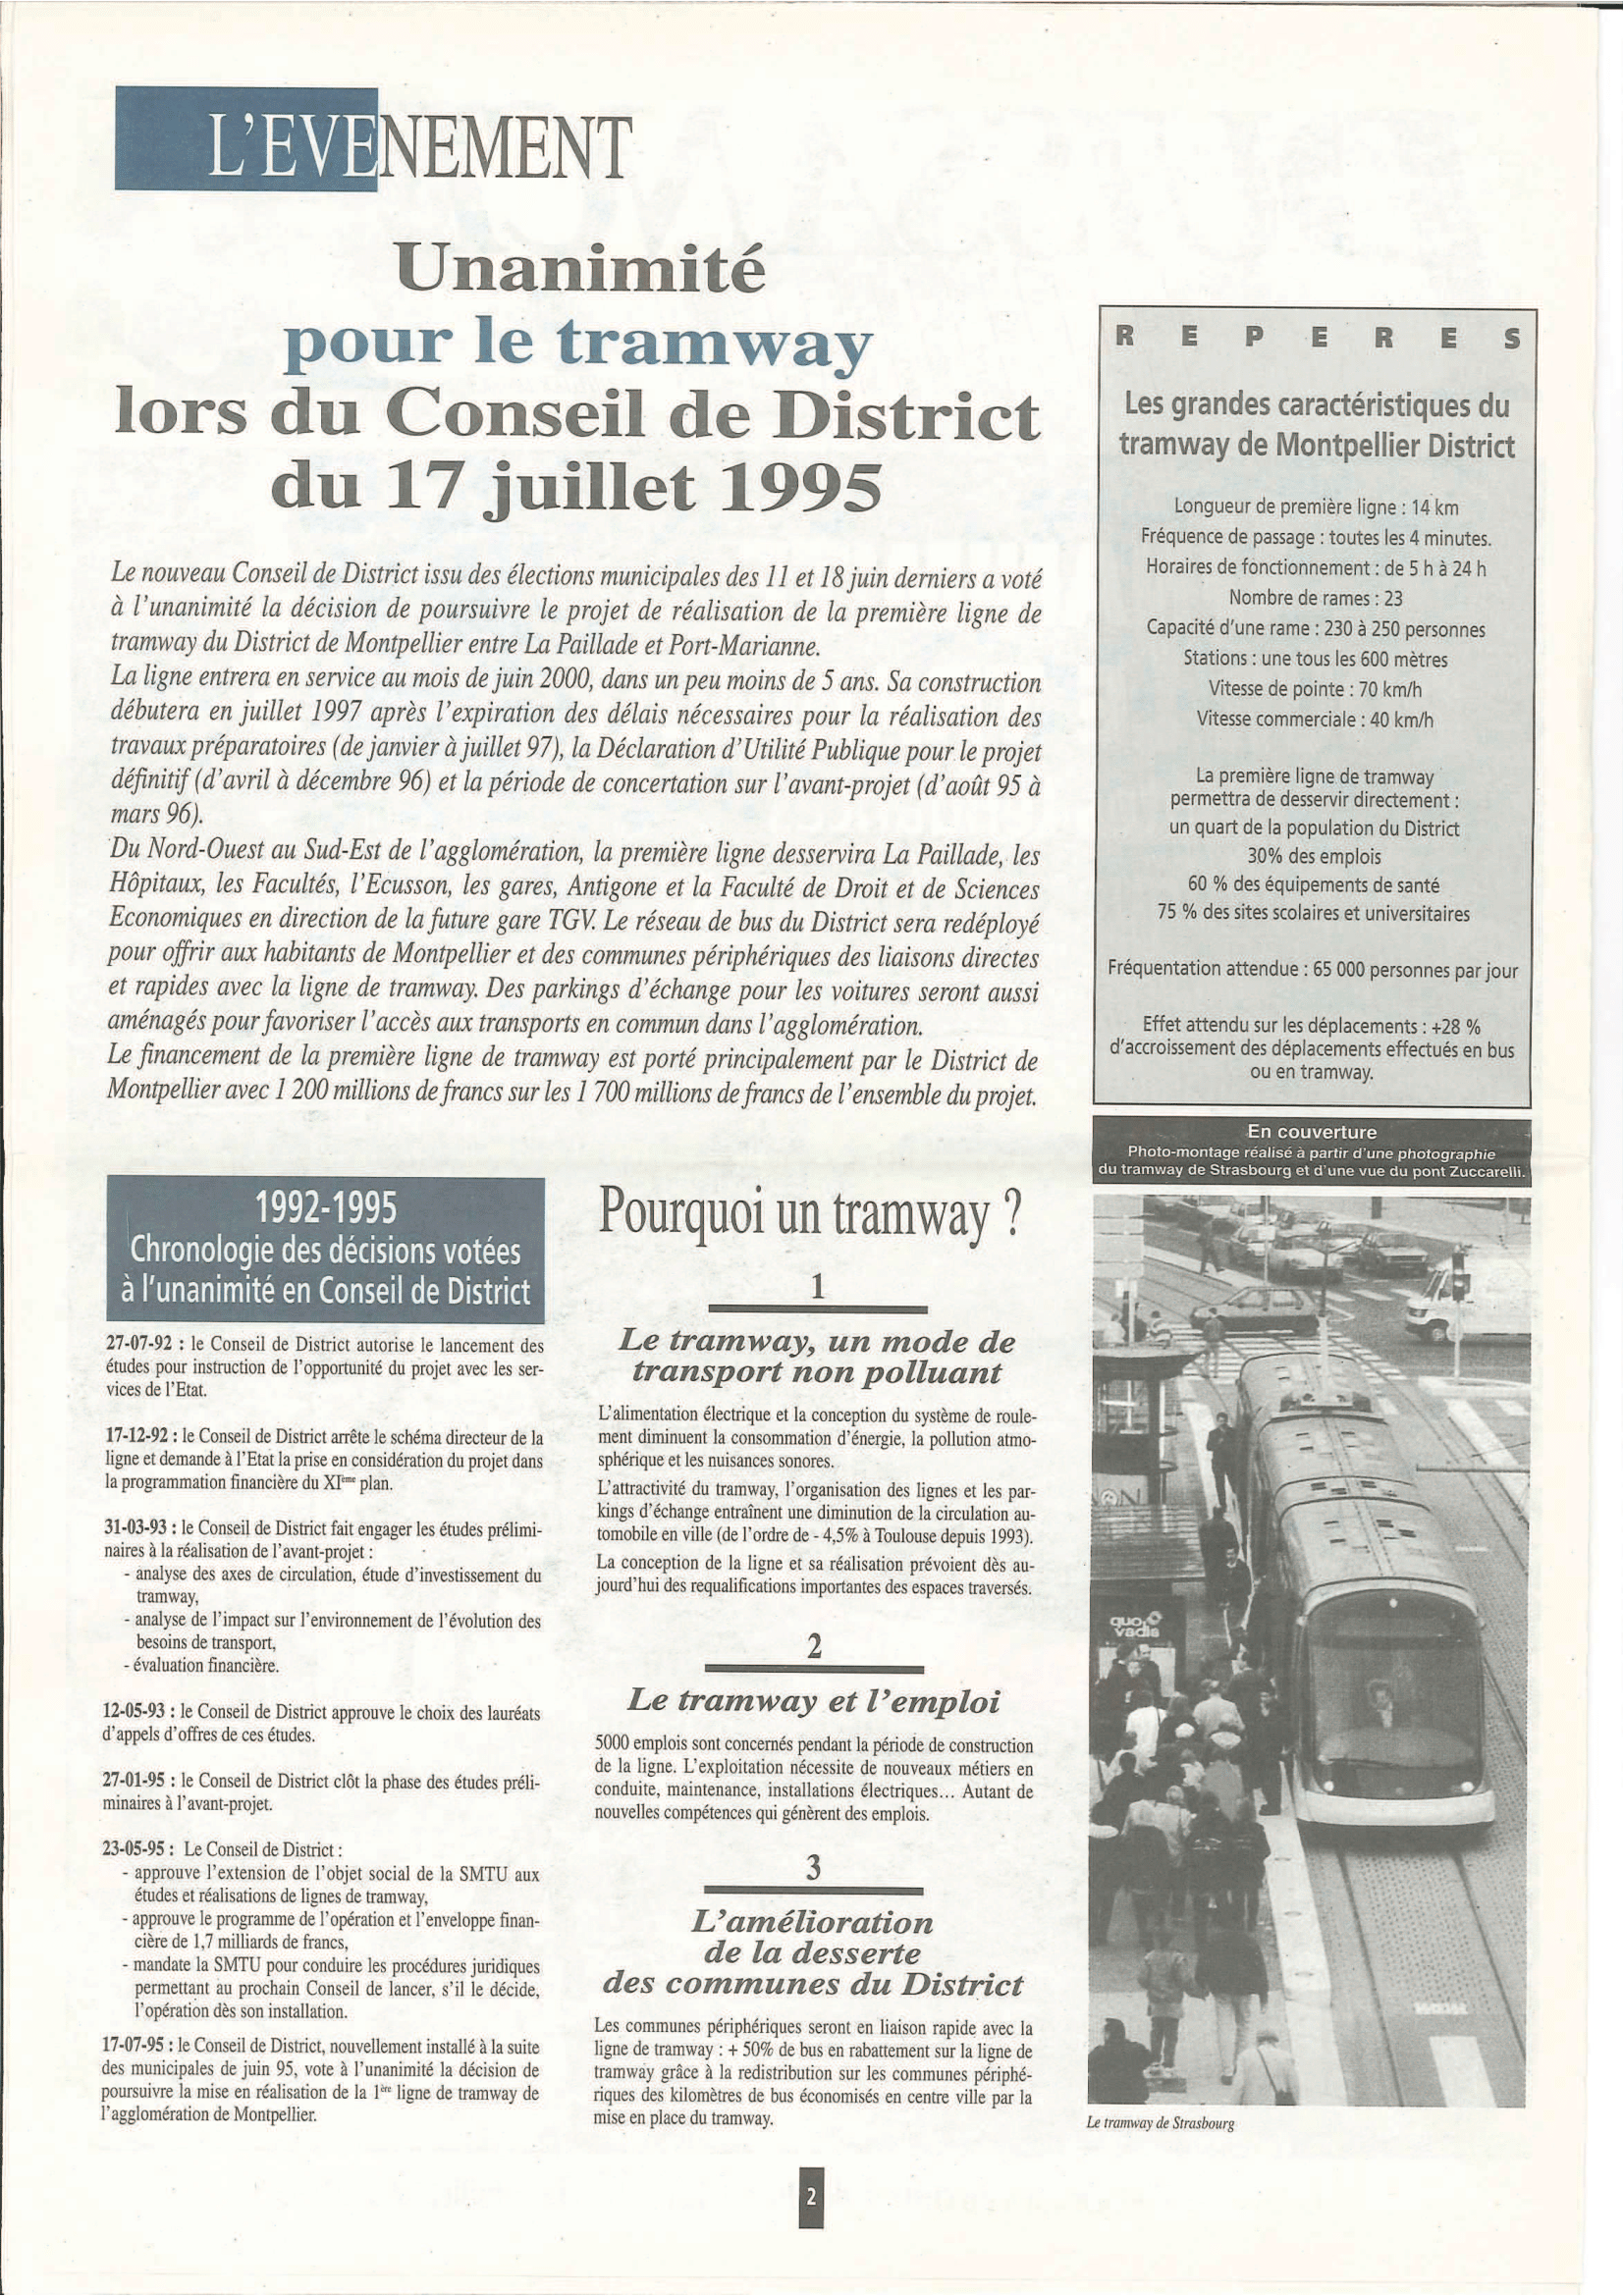 Page 1 du journal "Puissance 15" n°113 de Juillet-Août 1995